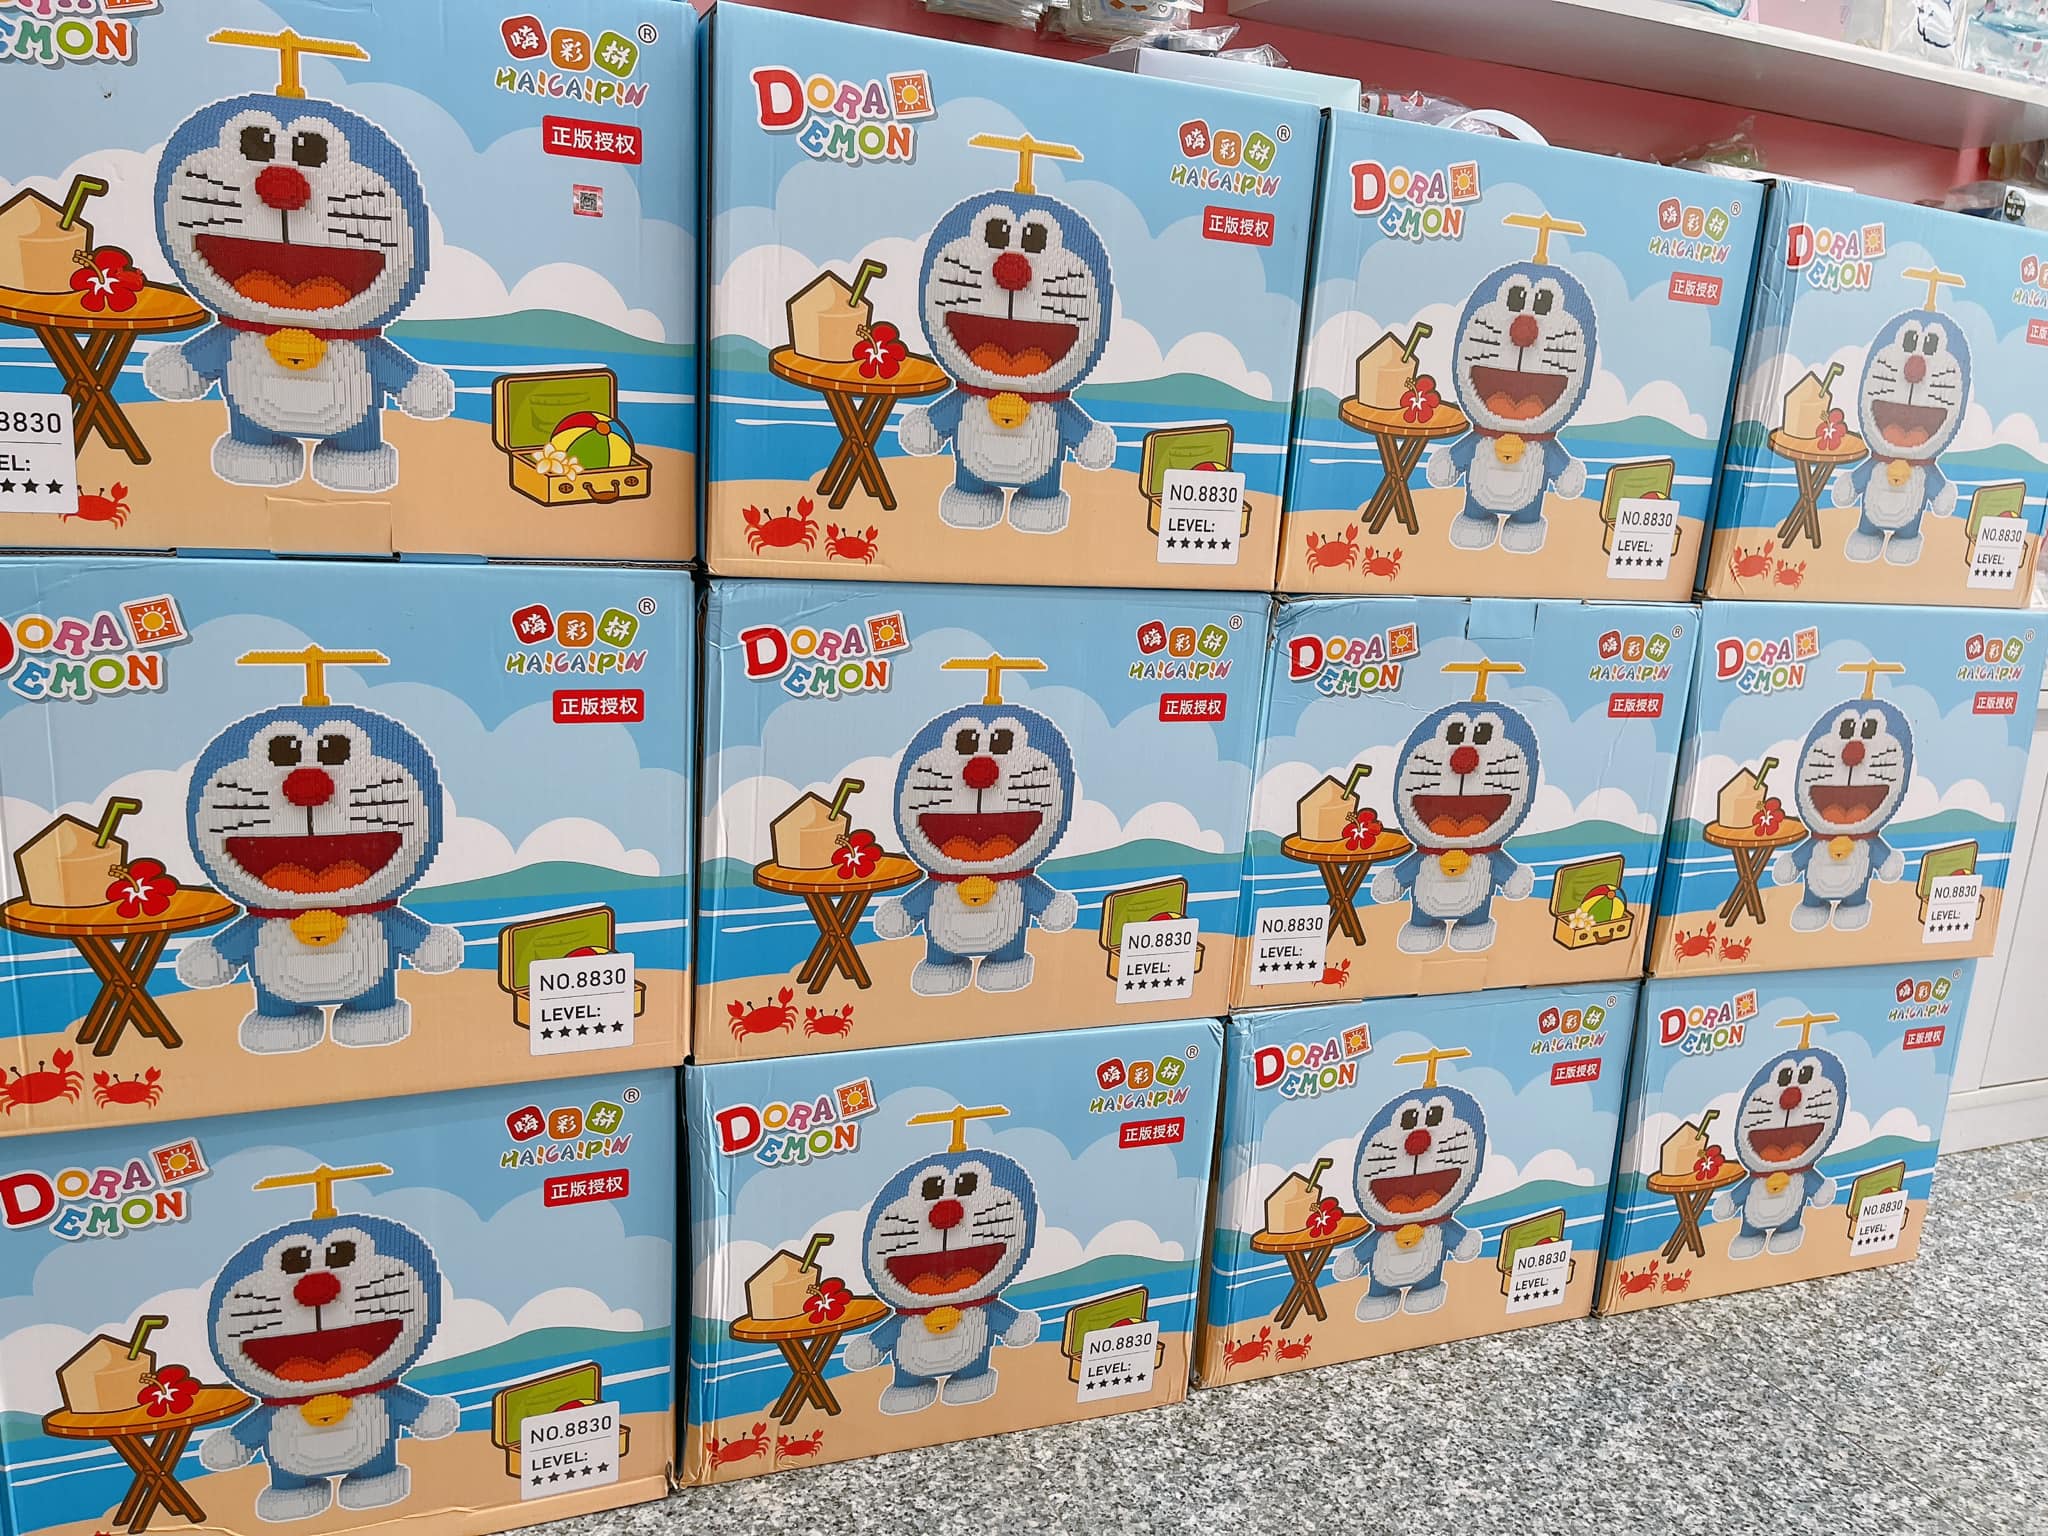 Mô Hình Doraemon  Mô Hình 6 Tư Thế Doremon Cầm Bánh Ngồi Đứng Vẫy Tay Nằm  Ngủ Bằng Nhựa  Cao 810cm   Hazomicom  Mua Sắm Trực Tuyến Số 1 Việt Nam